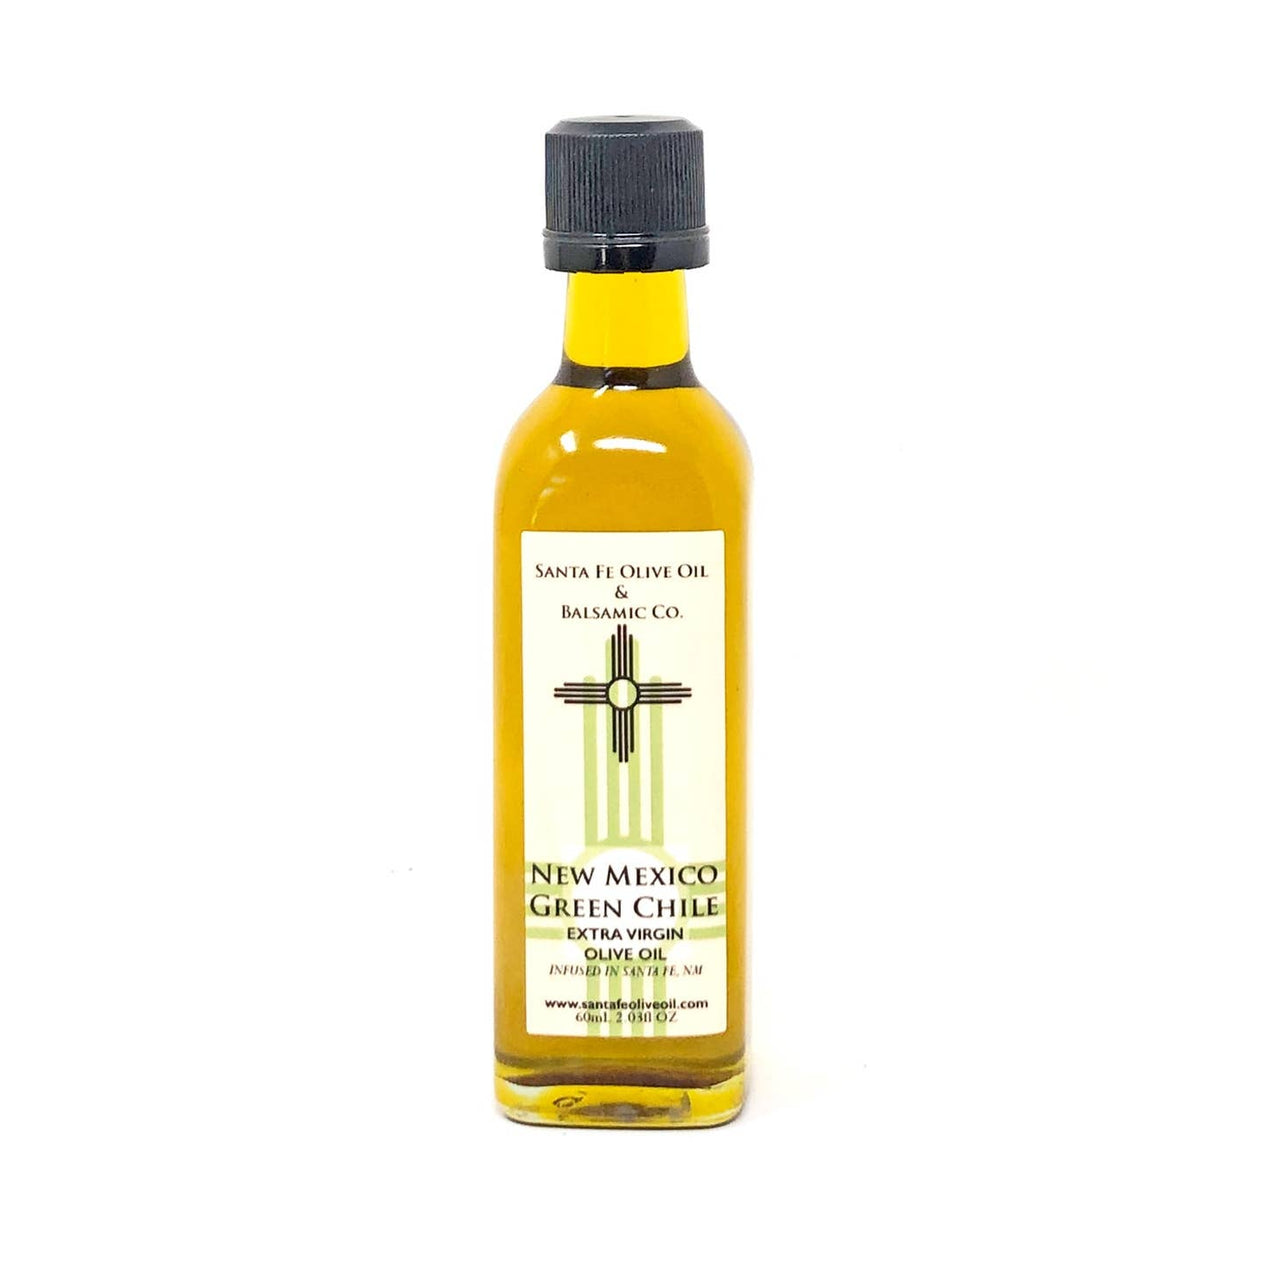 Santa Fe Olive Oil - Green Chile Olive Oil (2 oz)